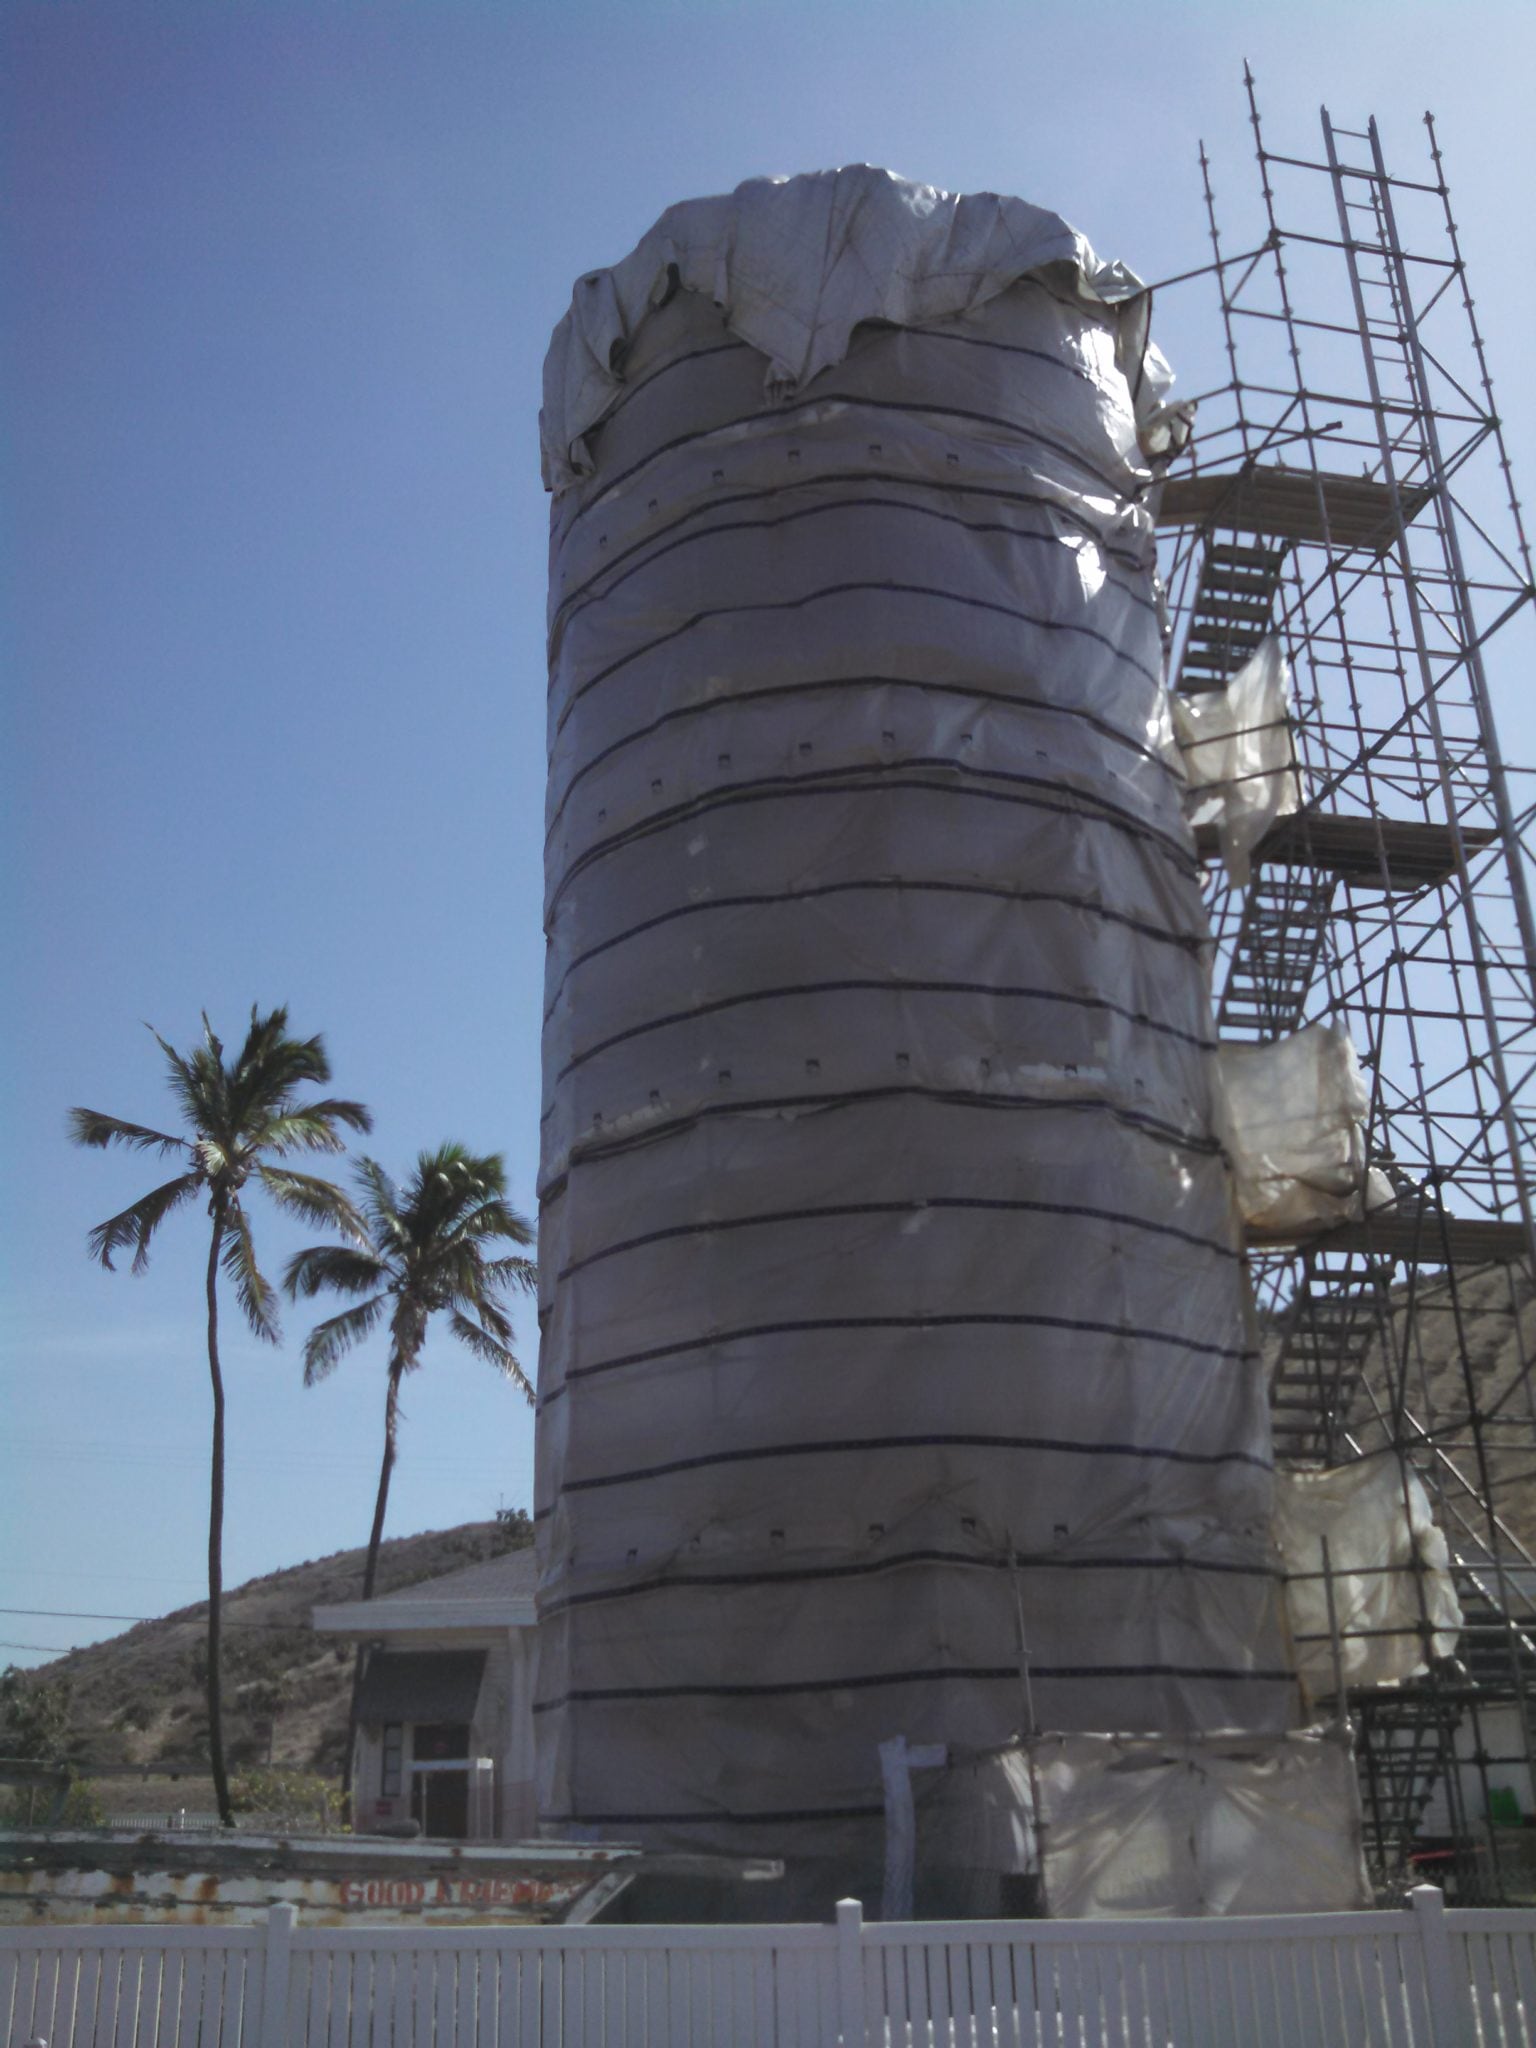 Usns Historical Lighthouse Renovation